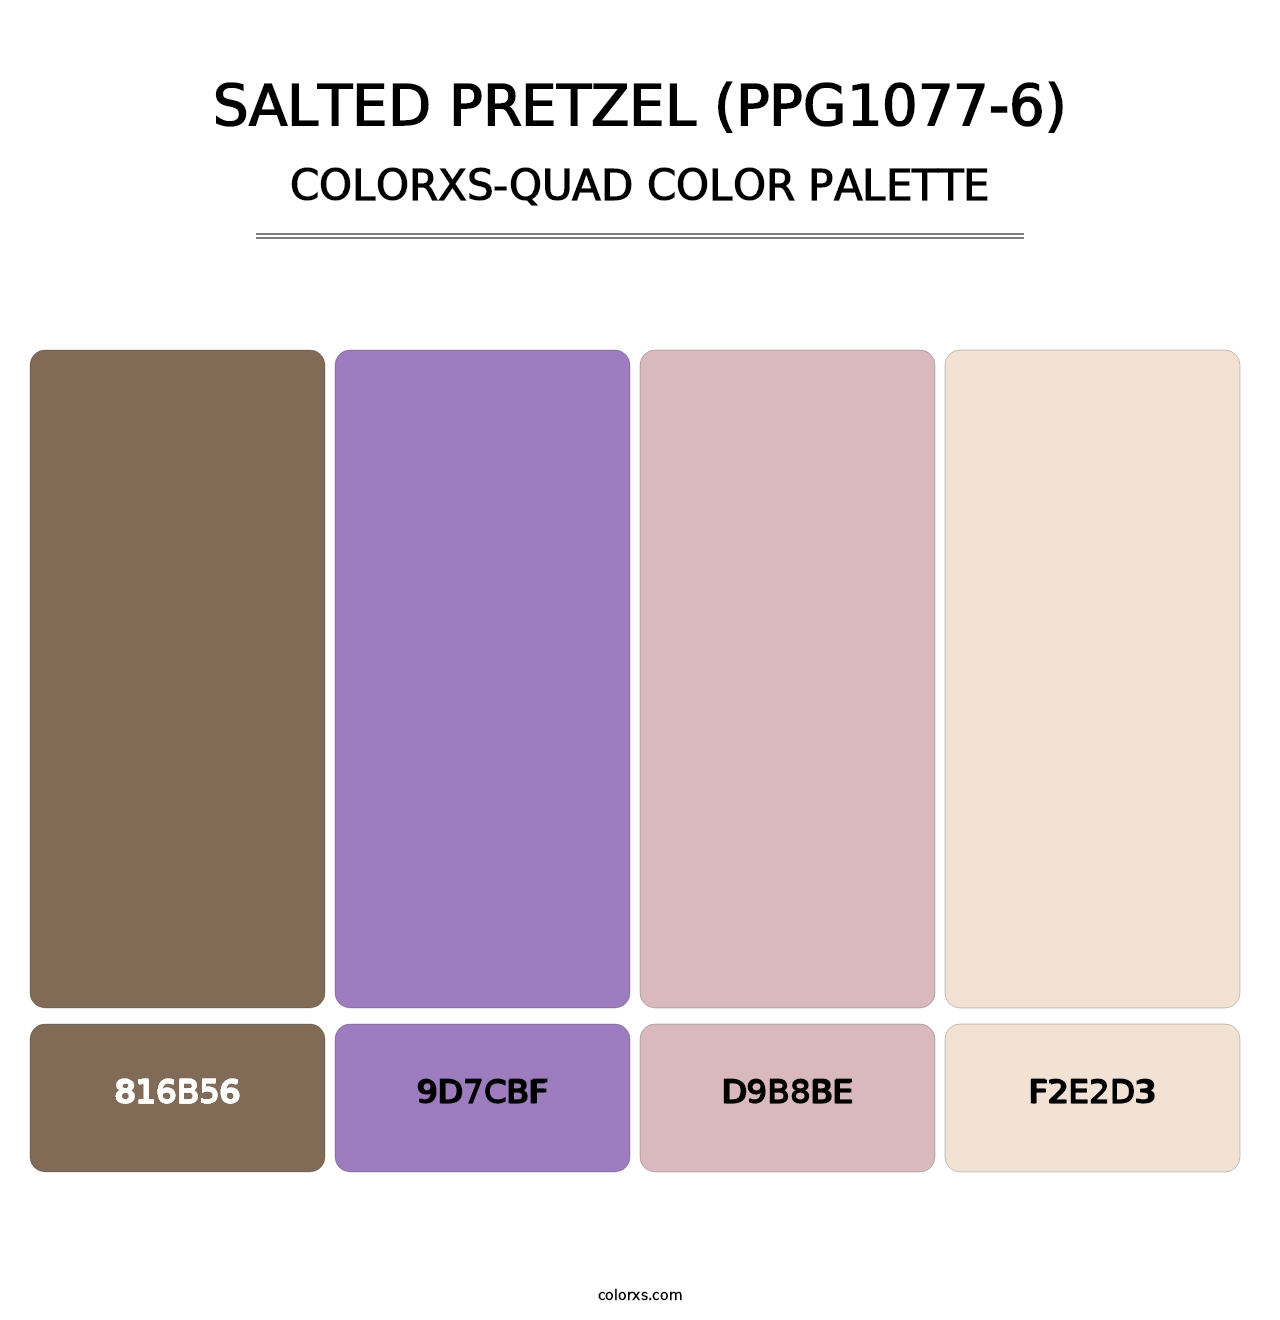 Salted Pretzel (PPG1077-6) - Colorxs Quad Palette